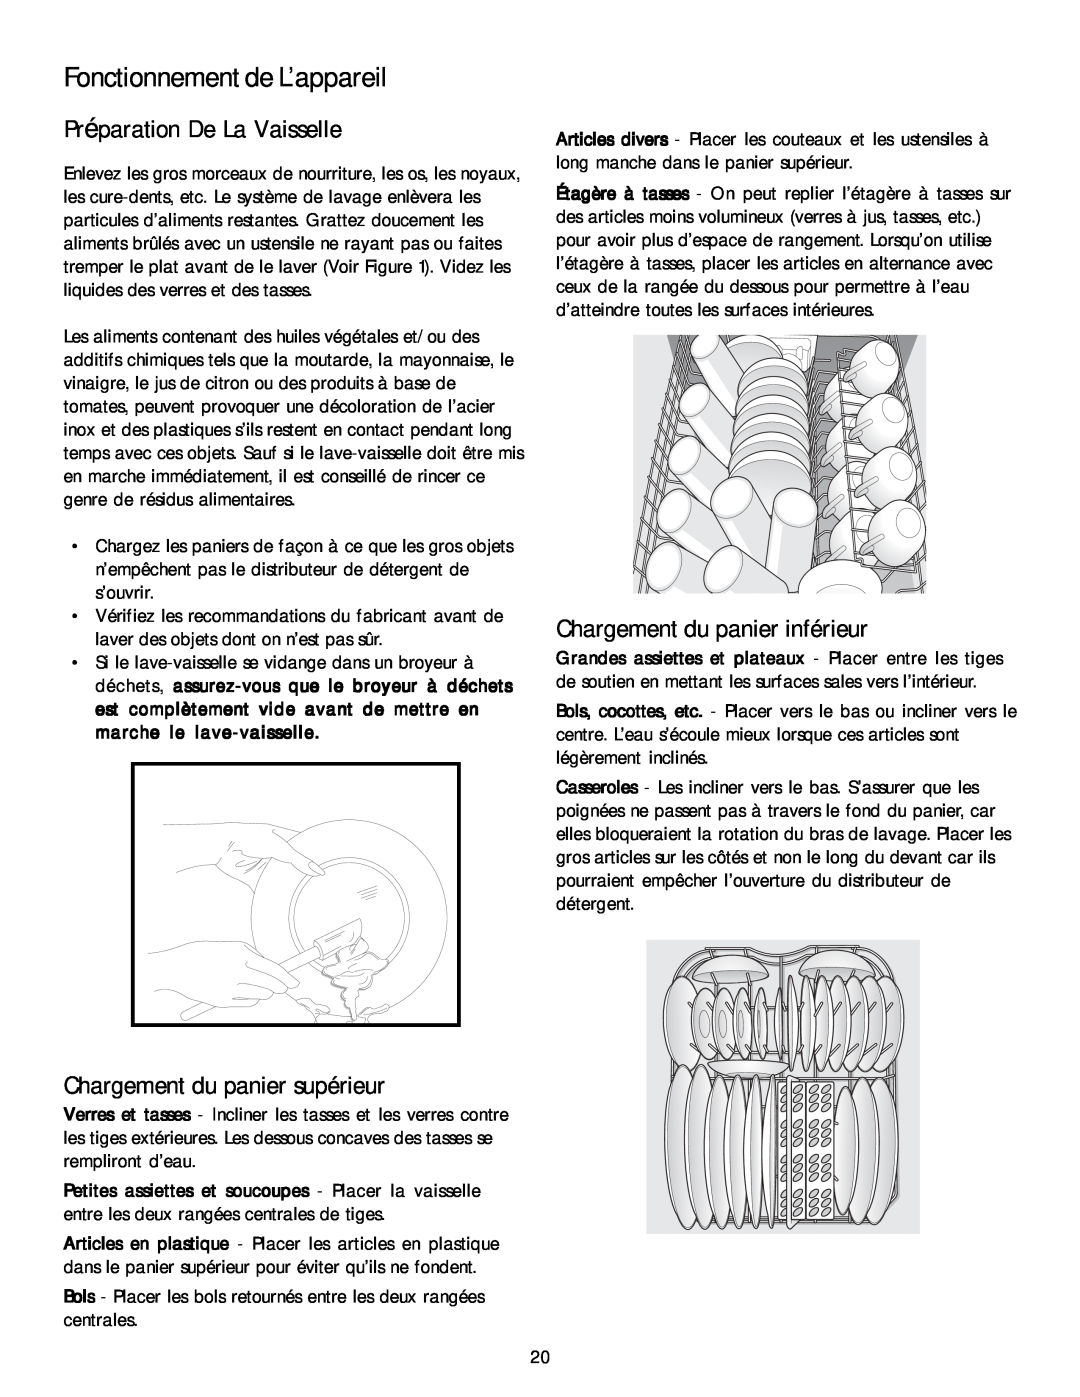 Kenmore 587.1468 manual Préparation De La Vaisselle, Chargement du panier inférieur, Chargement du panier supérieur 